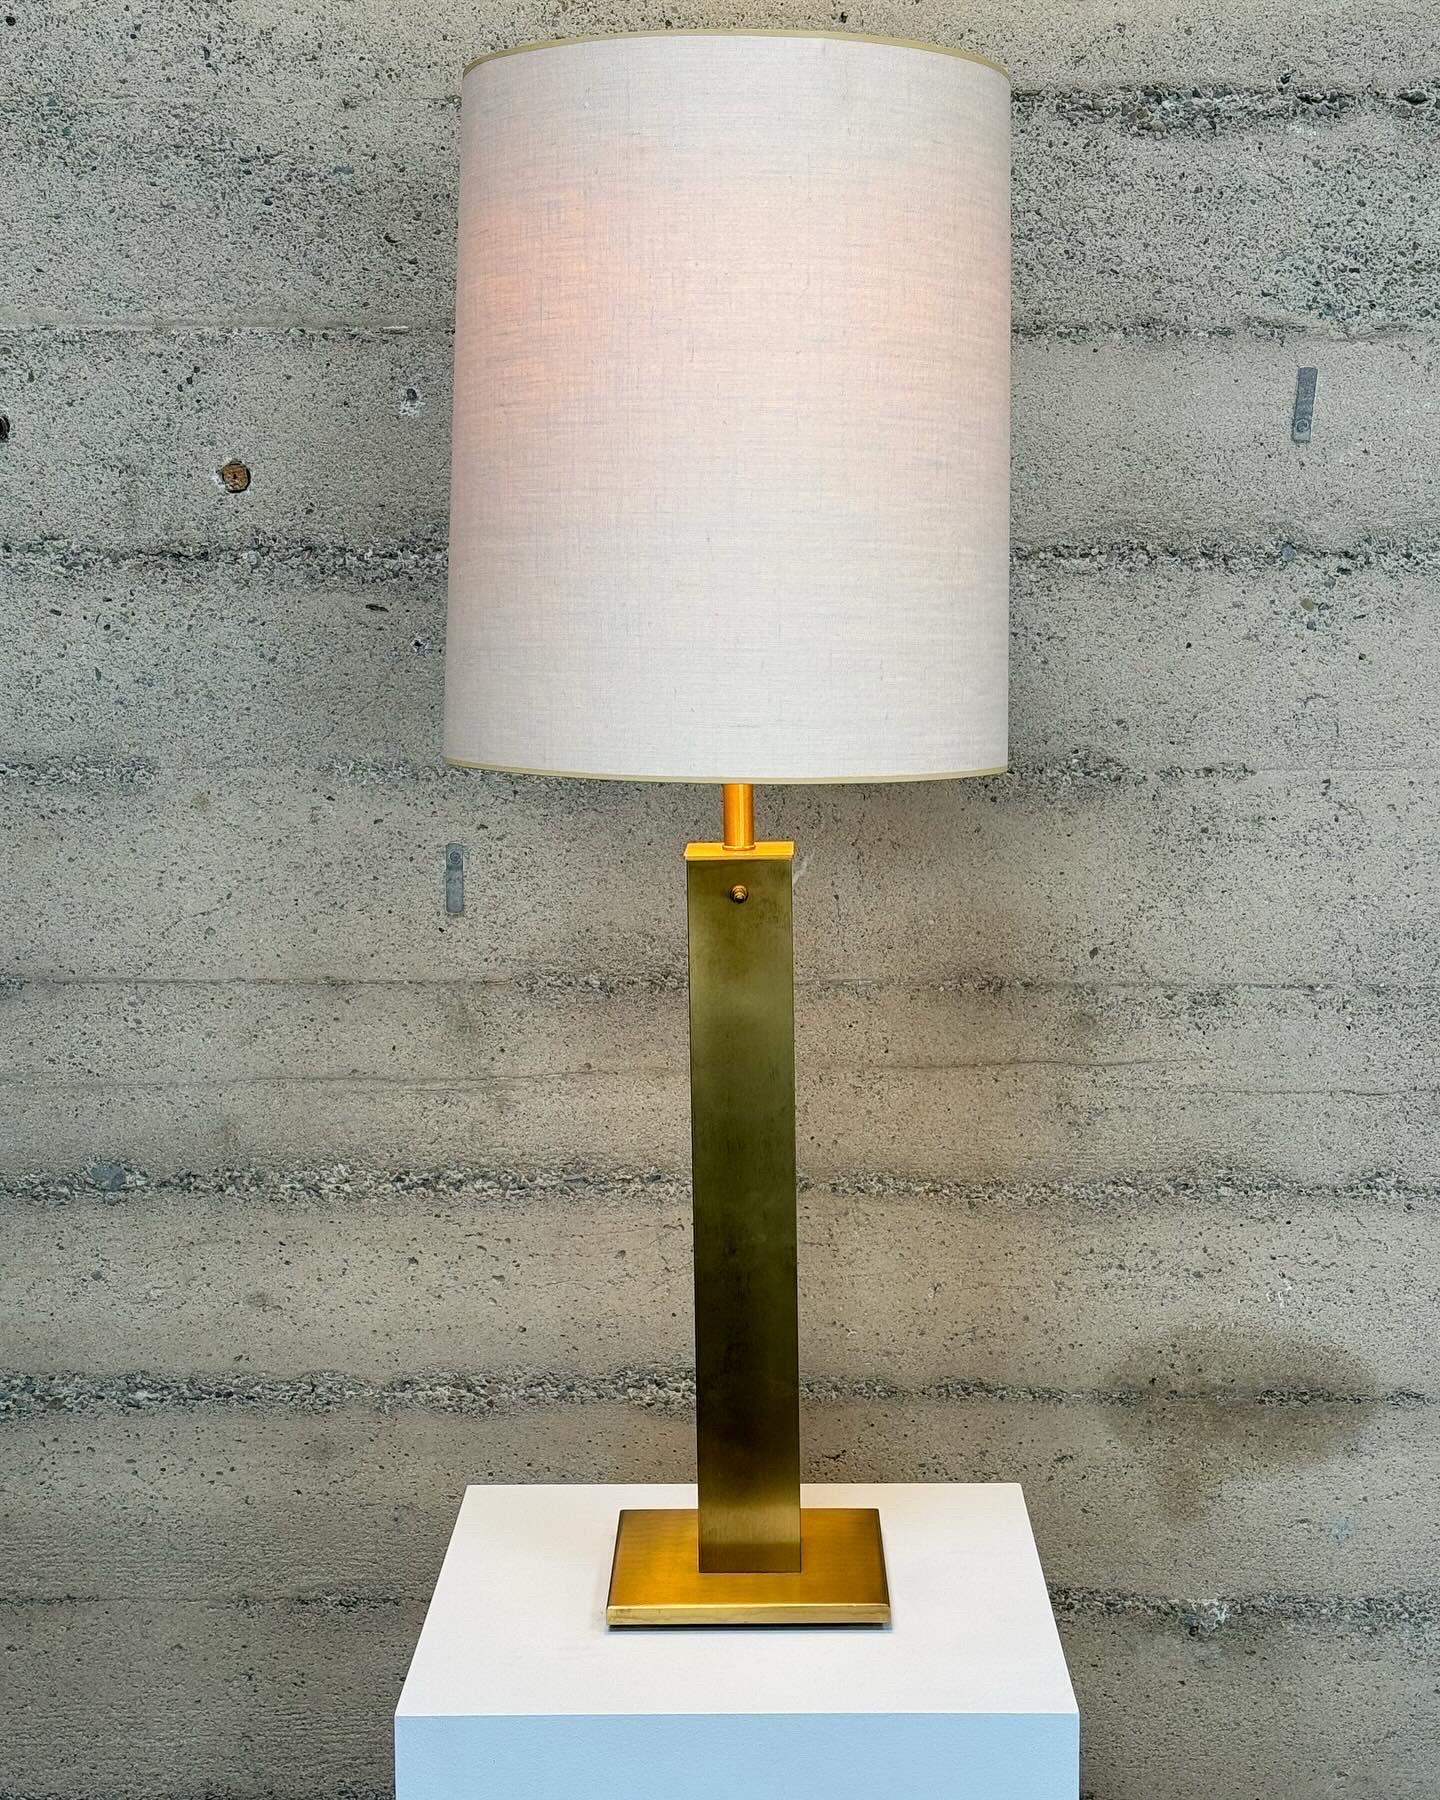 Lampe de table haute des années 1960 de Nessen Studios, conçue par Greta Von Nessen, en laiton, lin et verre. Le corps de la lampe est une haute colonne carrée avec une base carrée, vers l'extrémité supérieure se trouve un interrupteur rotatif, une